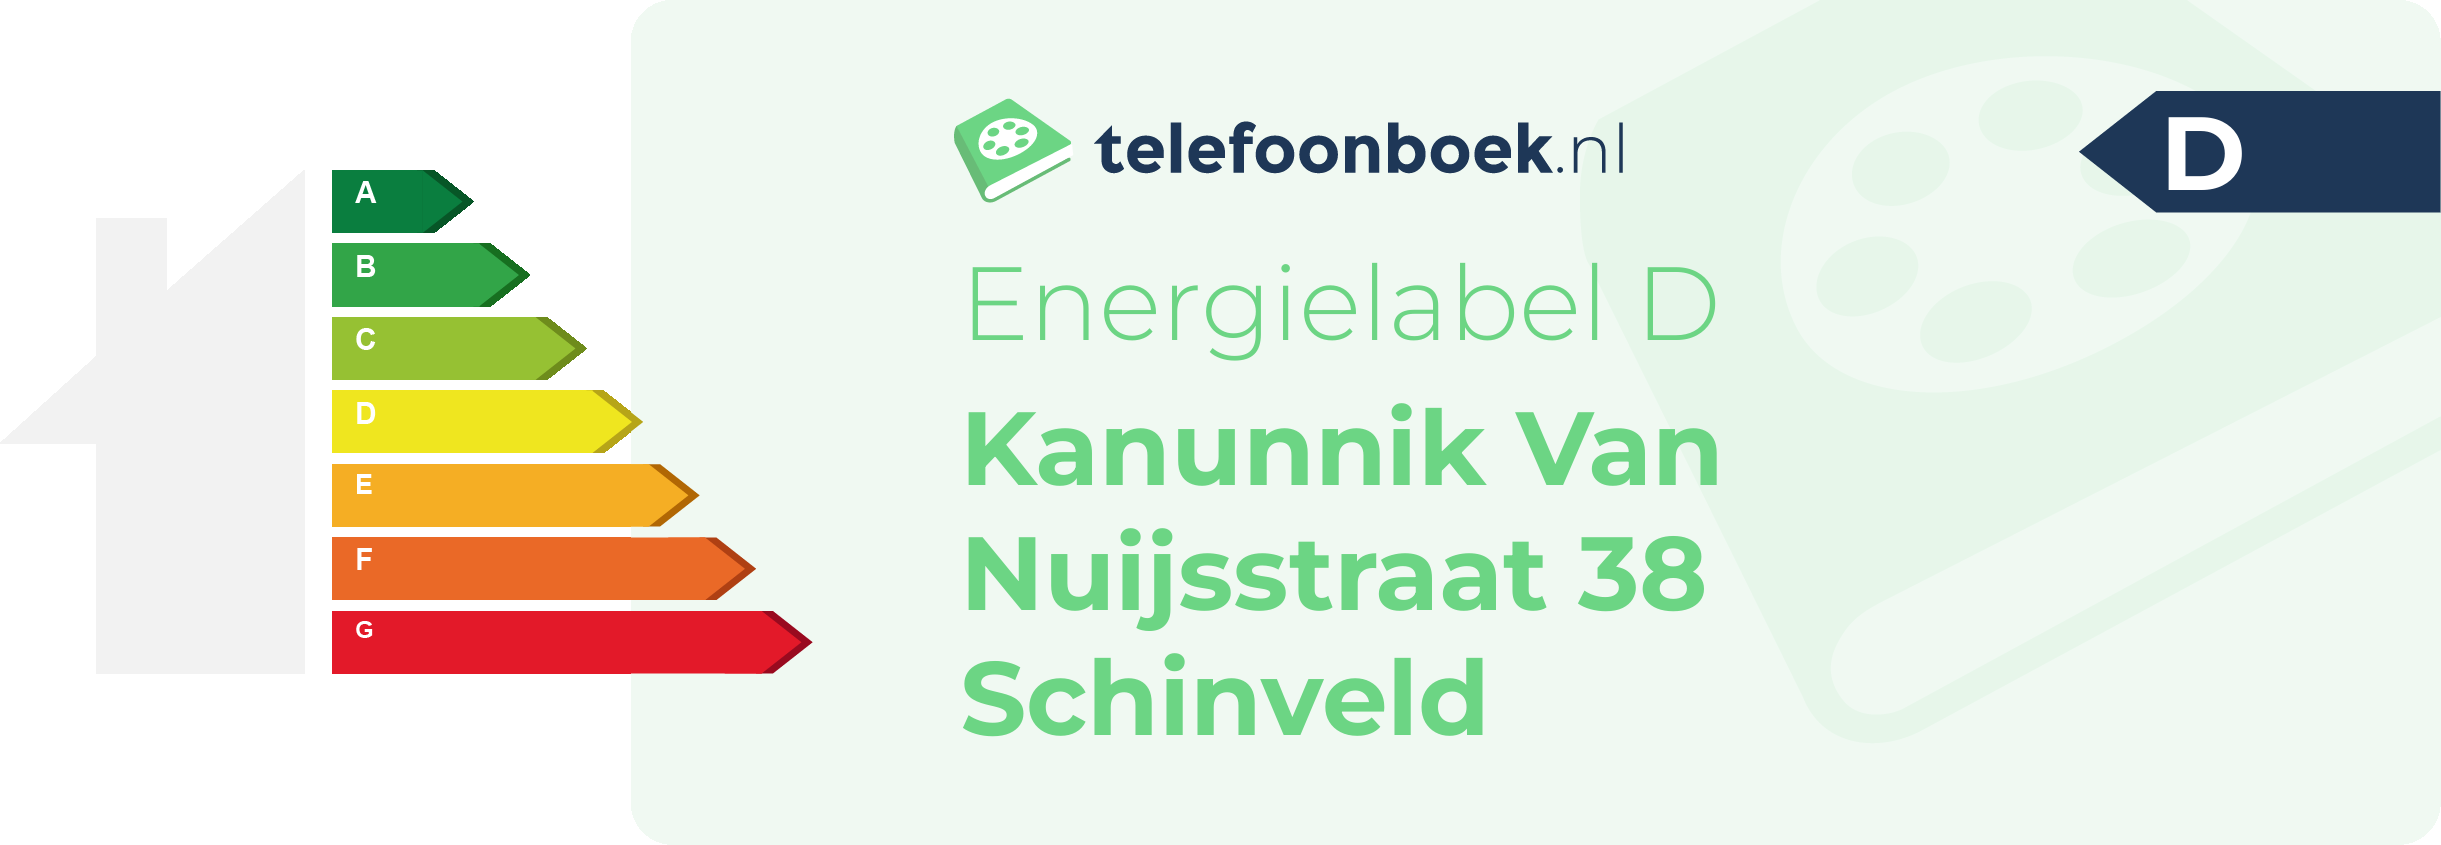 Energielabel Kanunnik Van Nuijsstraat 38 Schinveld